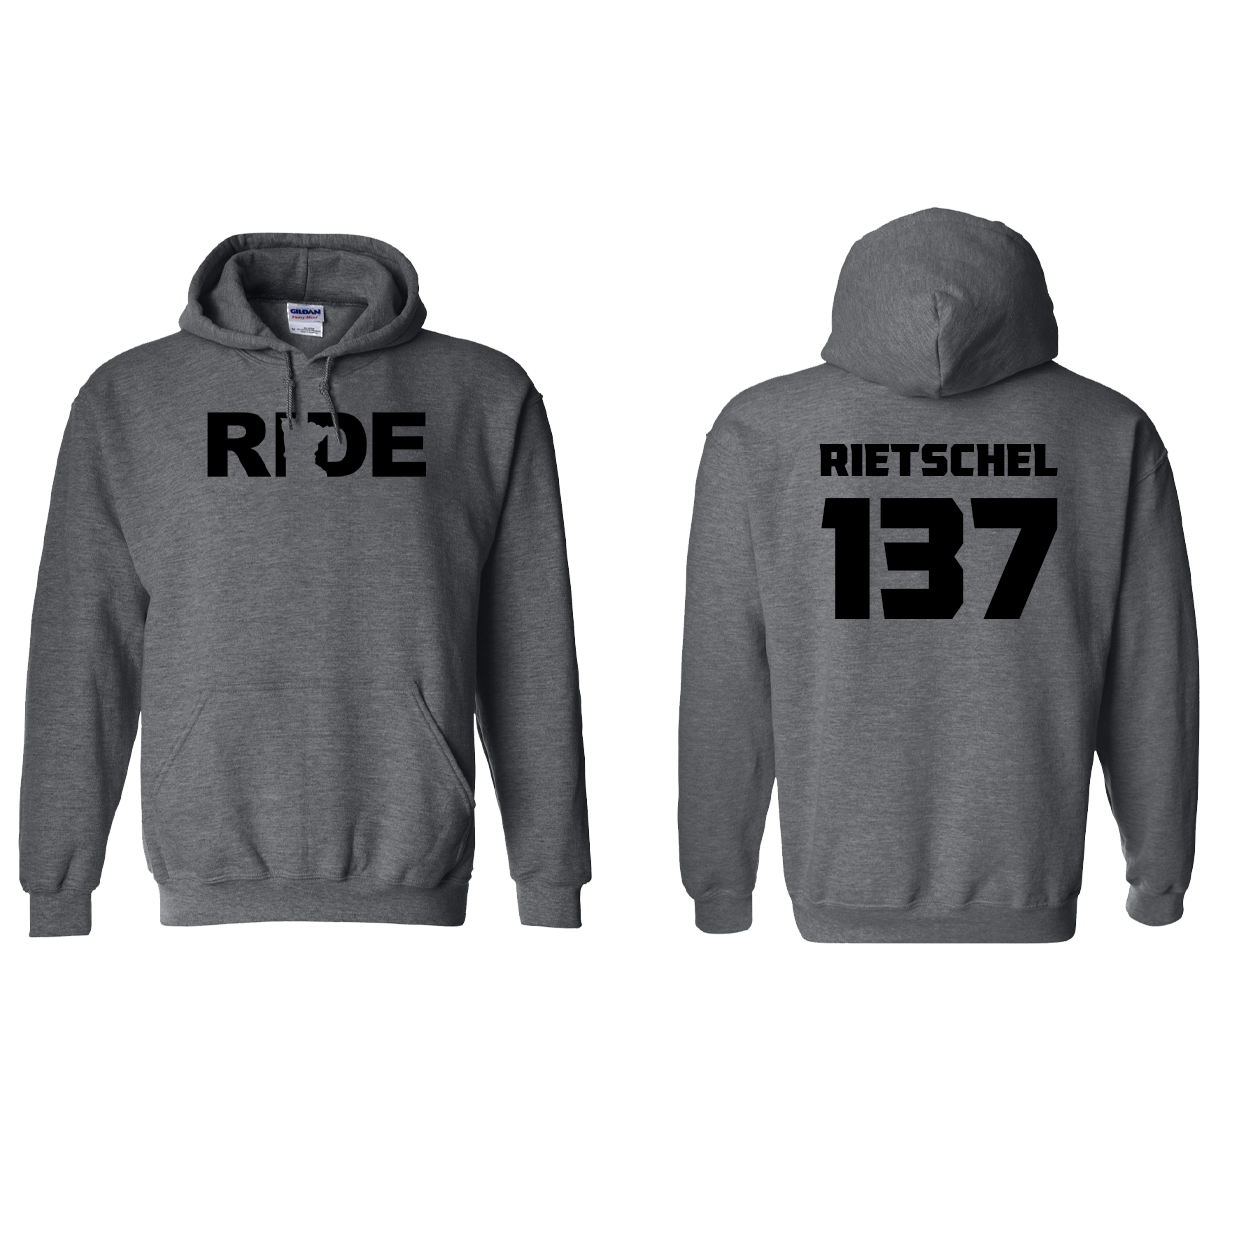 FXR BMX Race Team Classic Athlete Support Sweatshirt C. RIETSCHEL #137 Dark Heather (Black Logo)